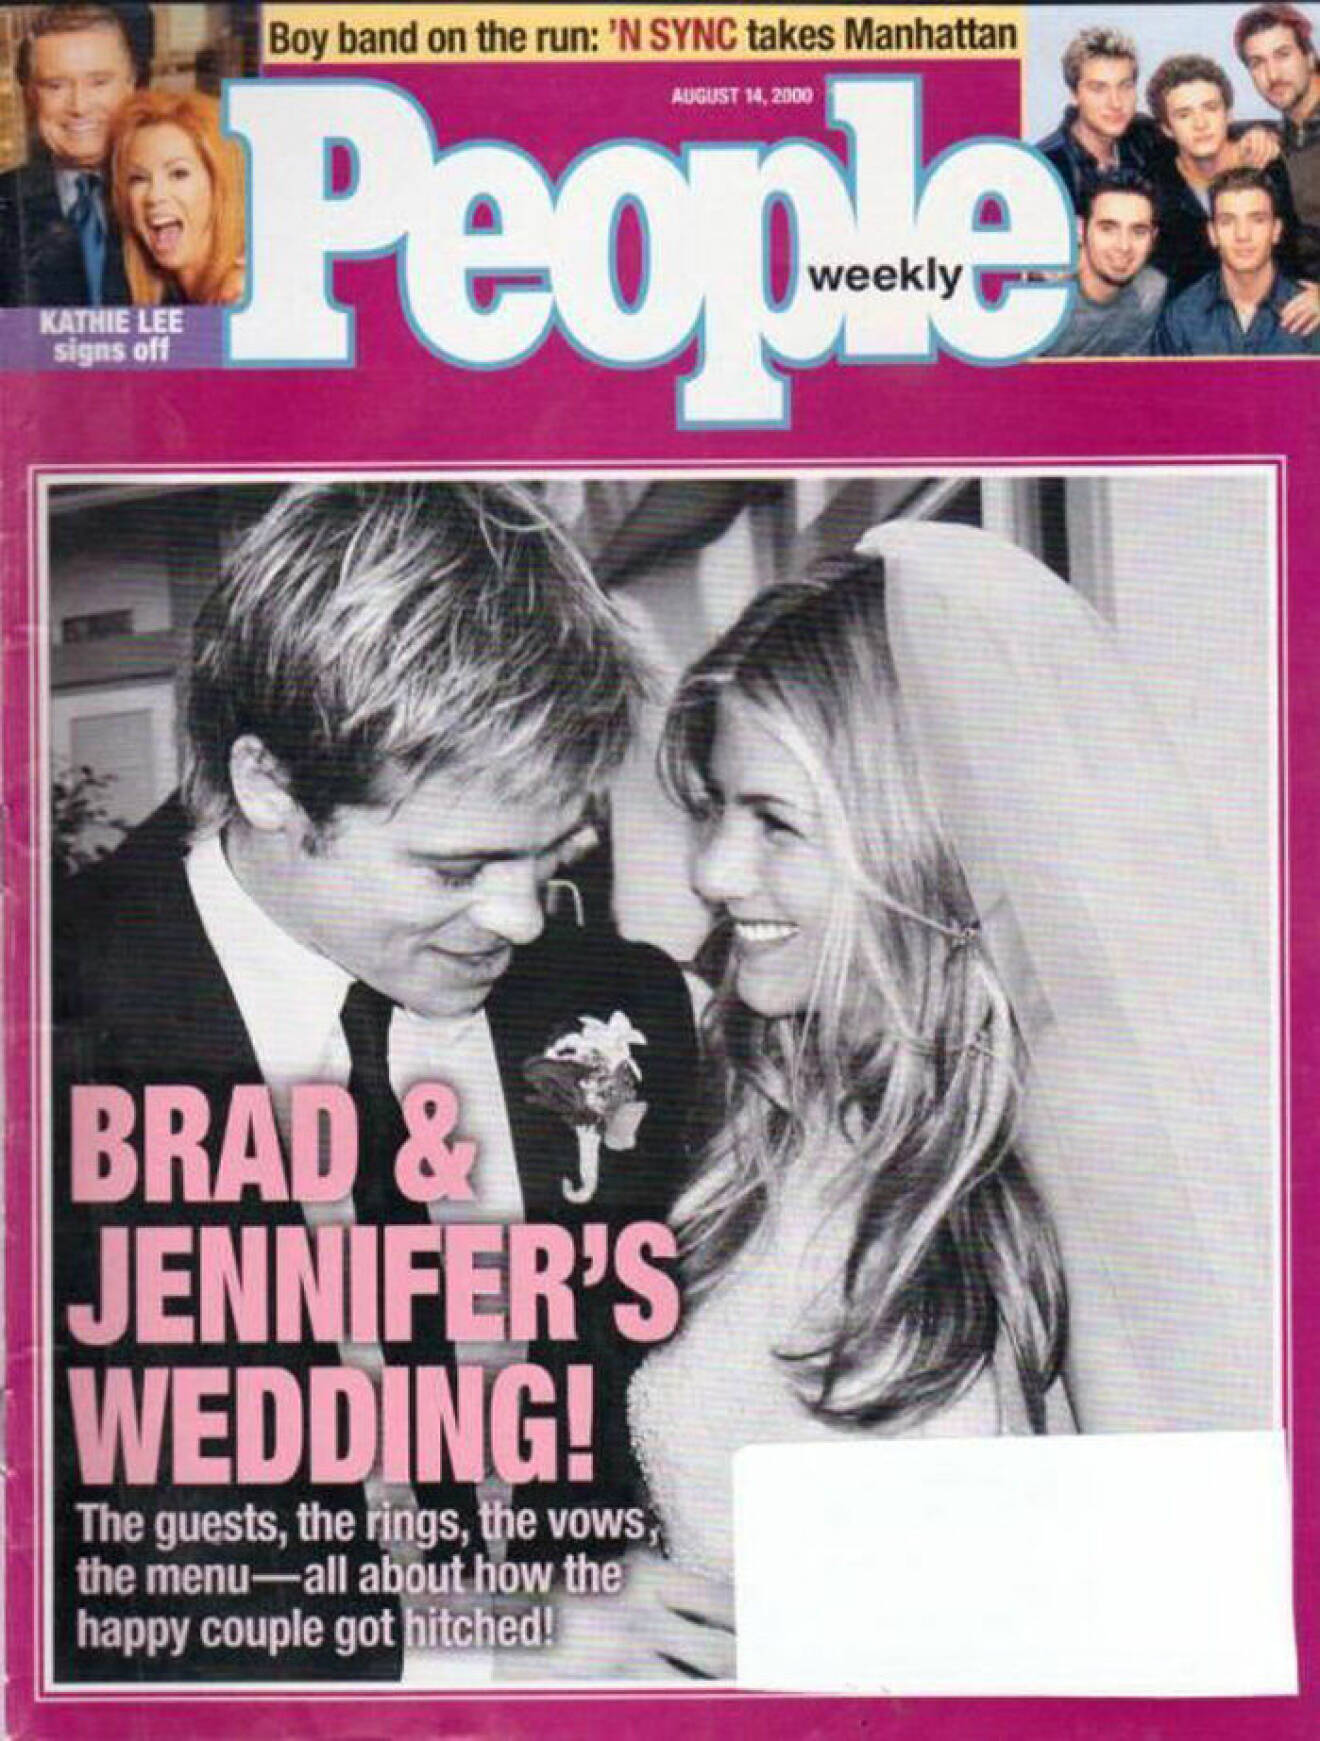 Jennifer och Brad gifter sig